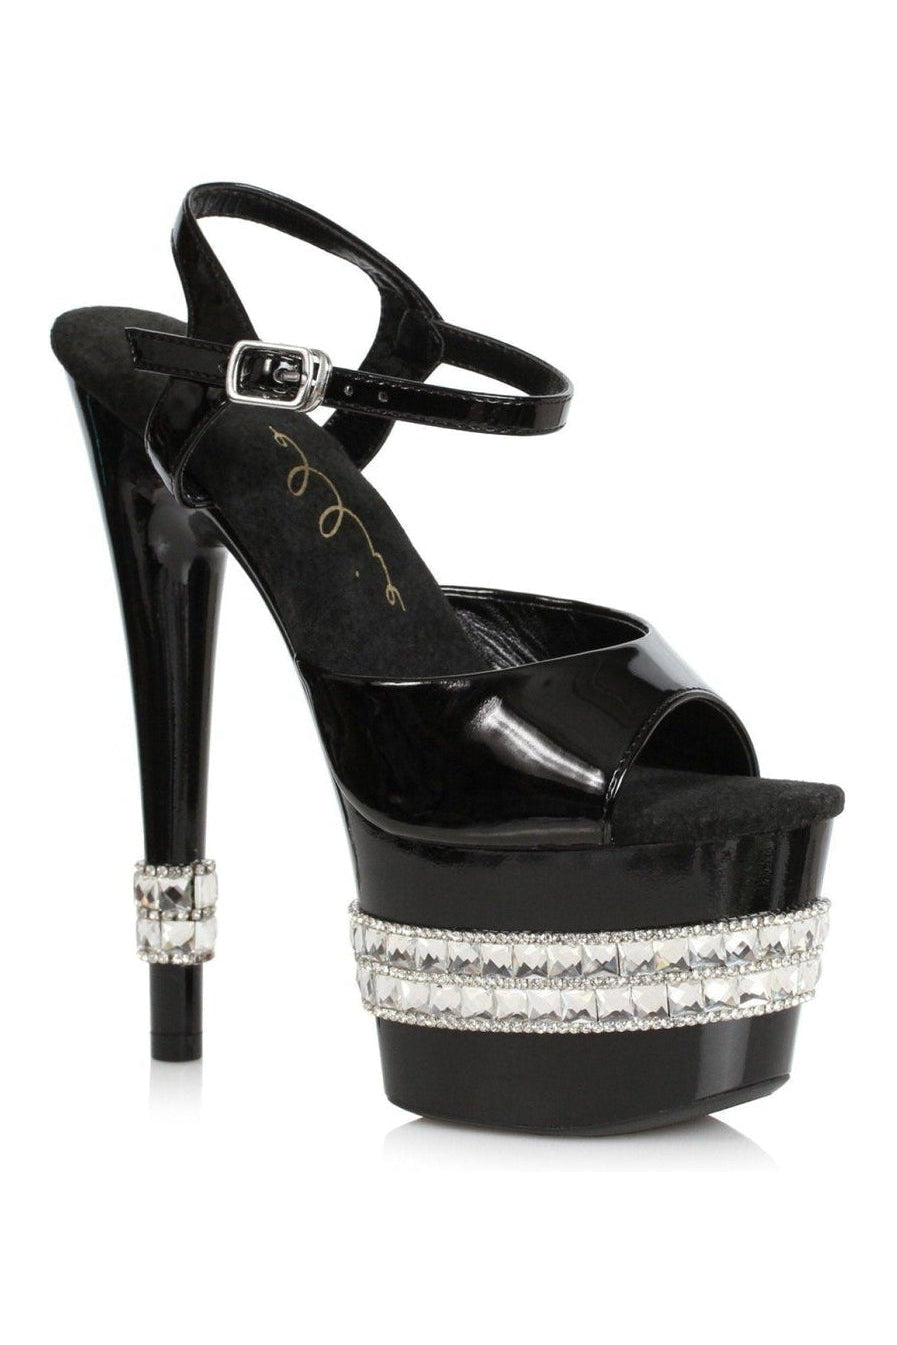 710-JULIET Stripper Sandal | Black Patent-Ellie Shoes-SEXYSHOES.COM